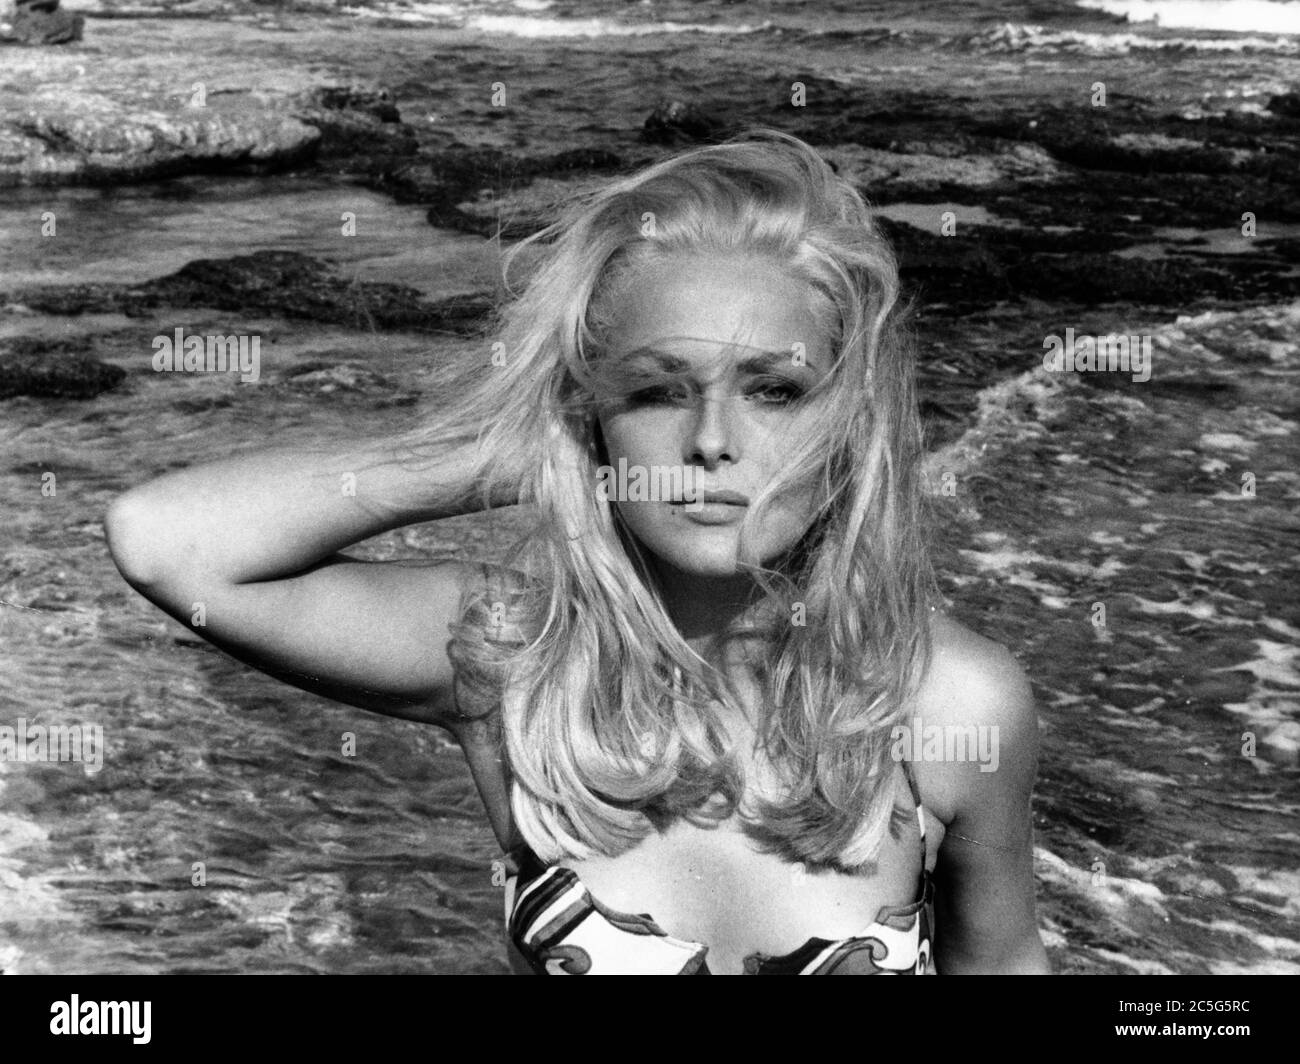 02 ottobre 1960 - Londra, Inghilterra, Regno Unito - VIRNA LISI indossa un costume da bait davanti all'oceano sulla spiaggia. (Credit Image: © Keystone Press Agency/Keystone USA via ZUMAPRESS.com) Foto Stock